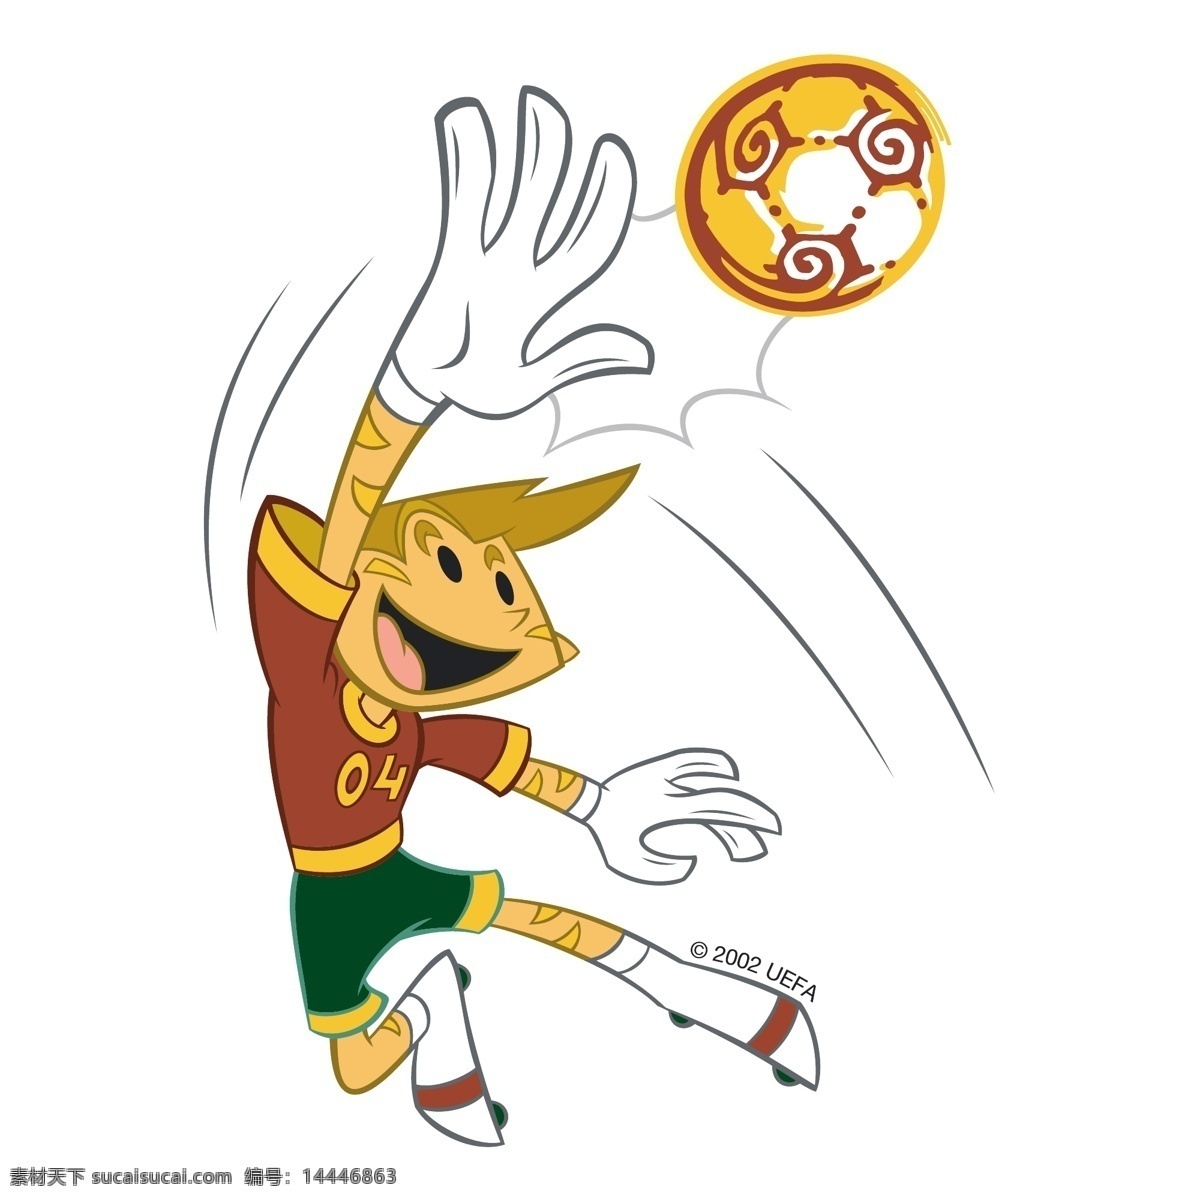 欧洲杯 2004 葡萄牙 欧 欧元 欧足联的欧元 向量 葡萄牙欧洲杯 欧洲杯的标志 标志 标识 矢量图 建筑家居